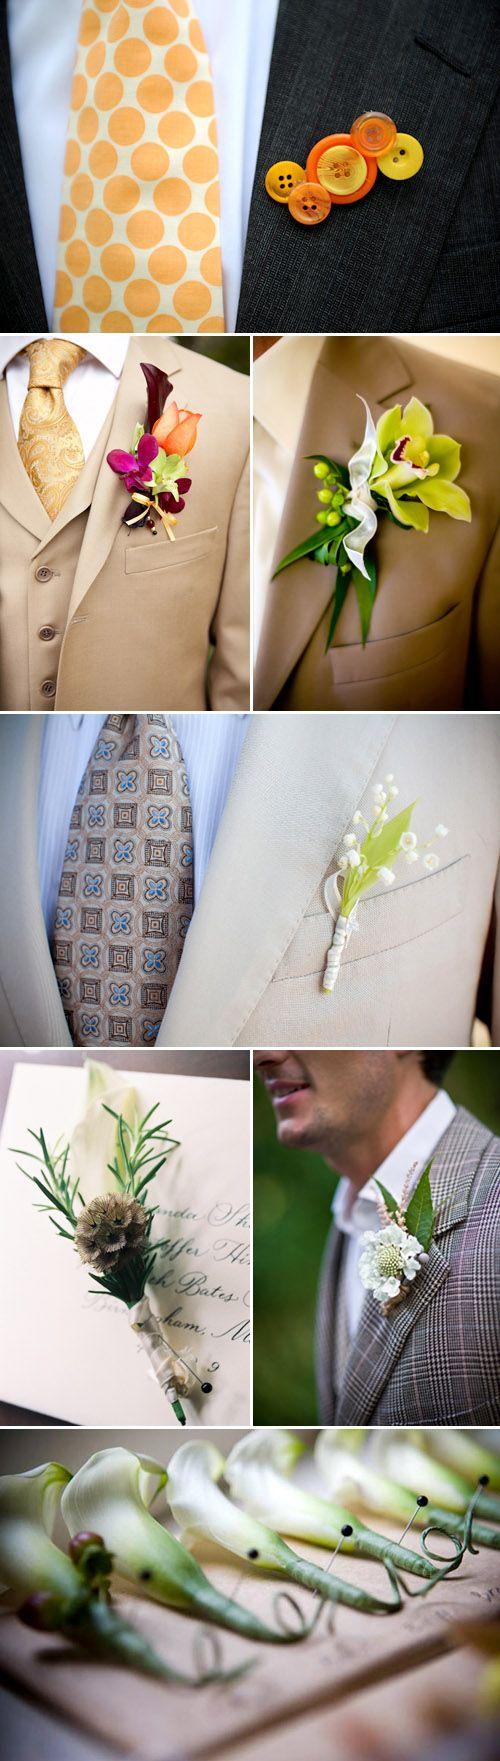 زفاف - Future Wedding Ideas